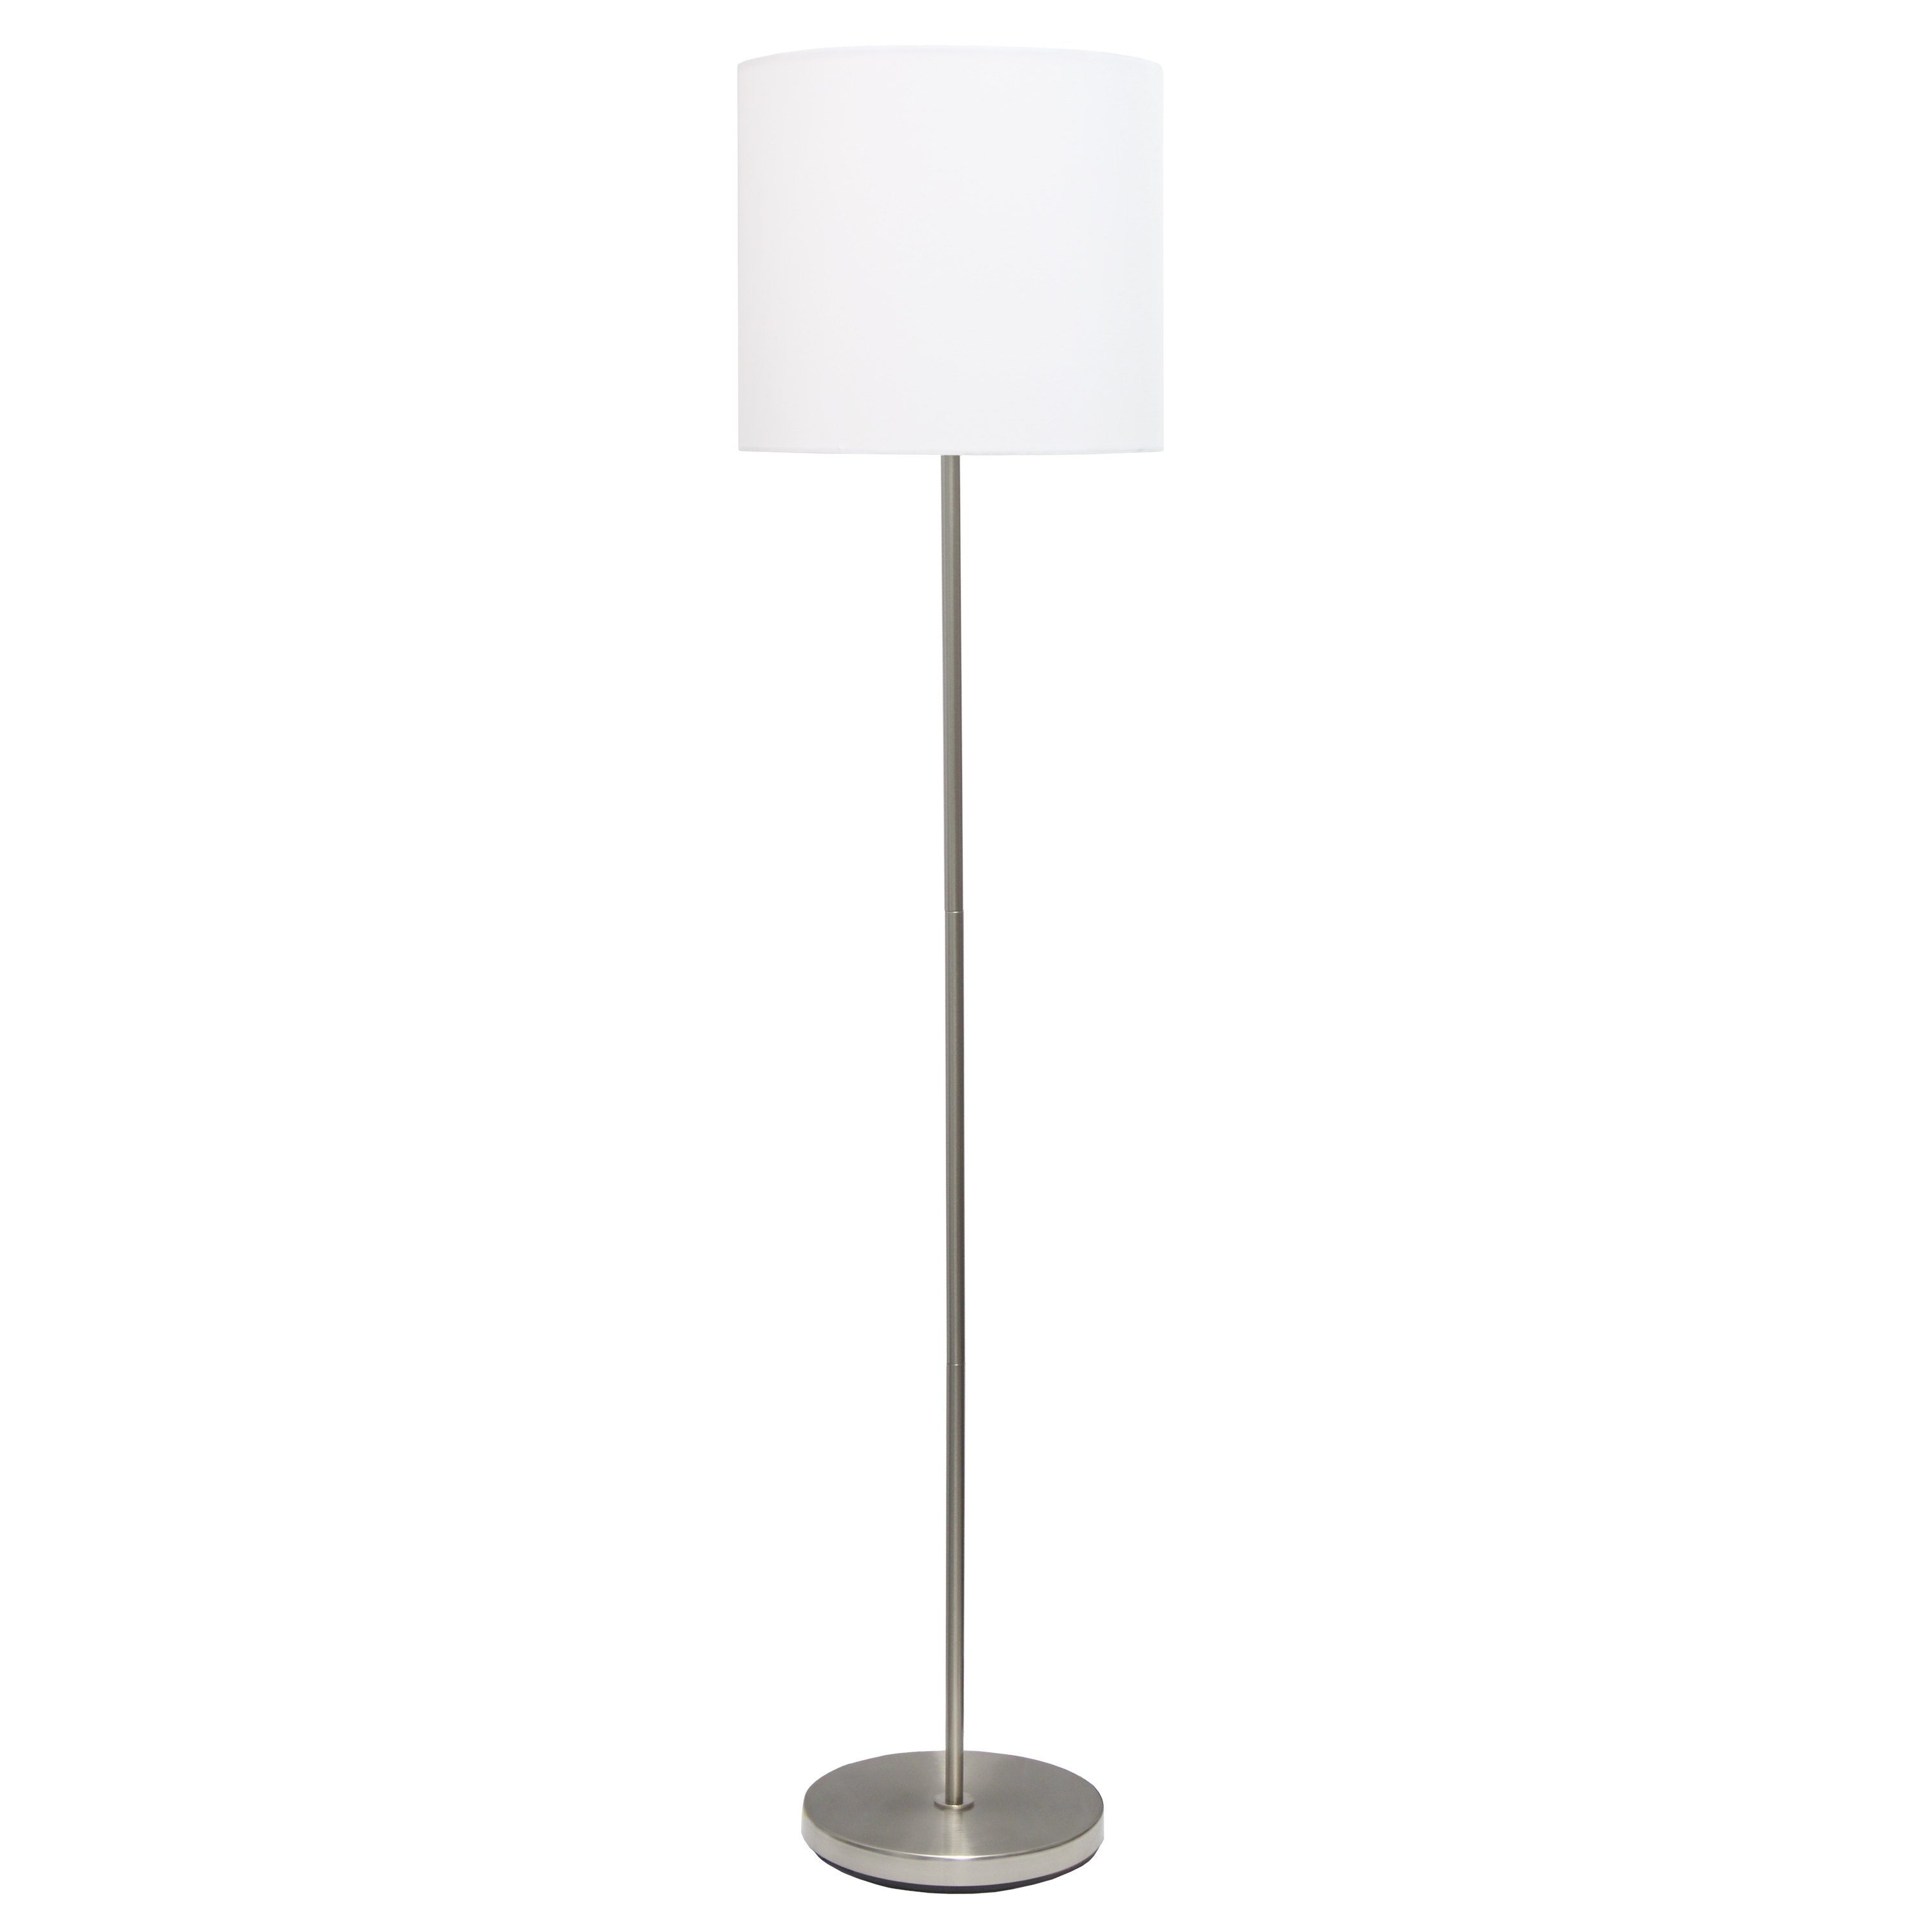 Simple Designs Brushed Nickel Drum Shade Floor Lamp, White - image 1 of 9